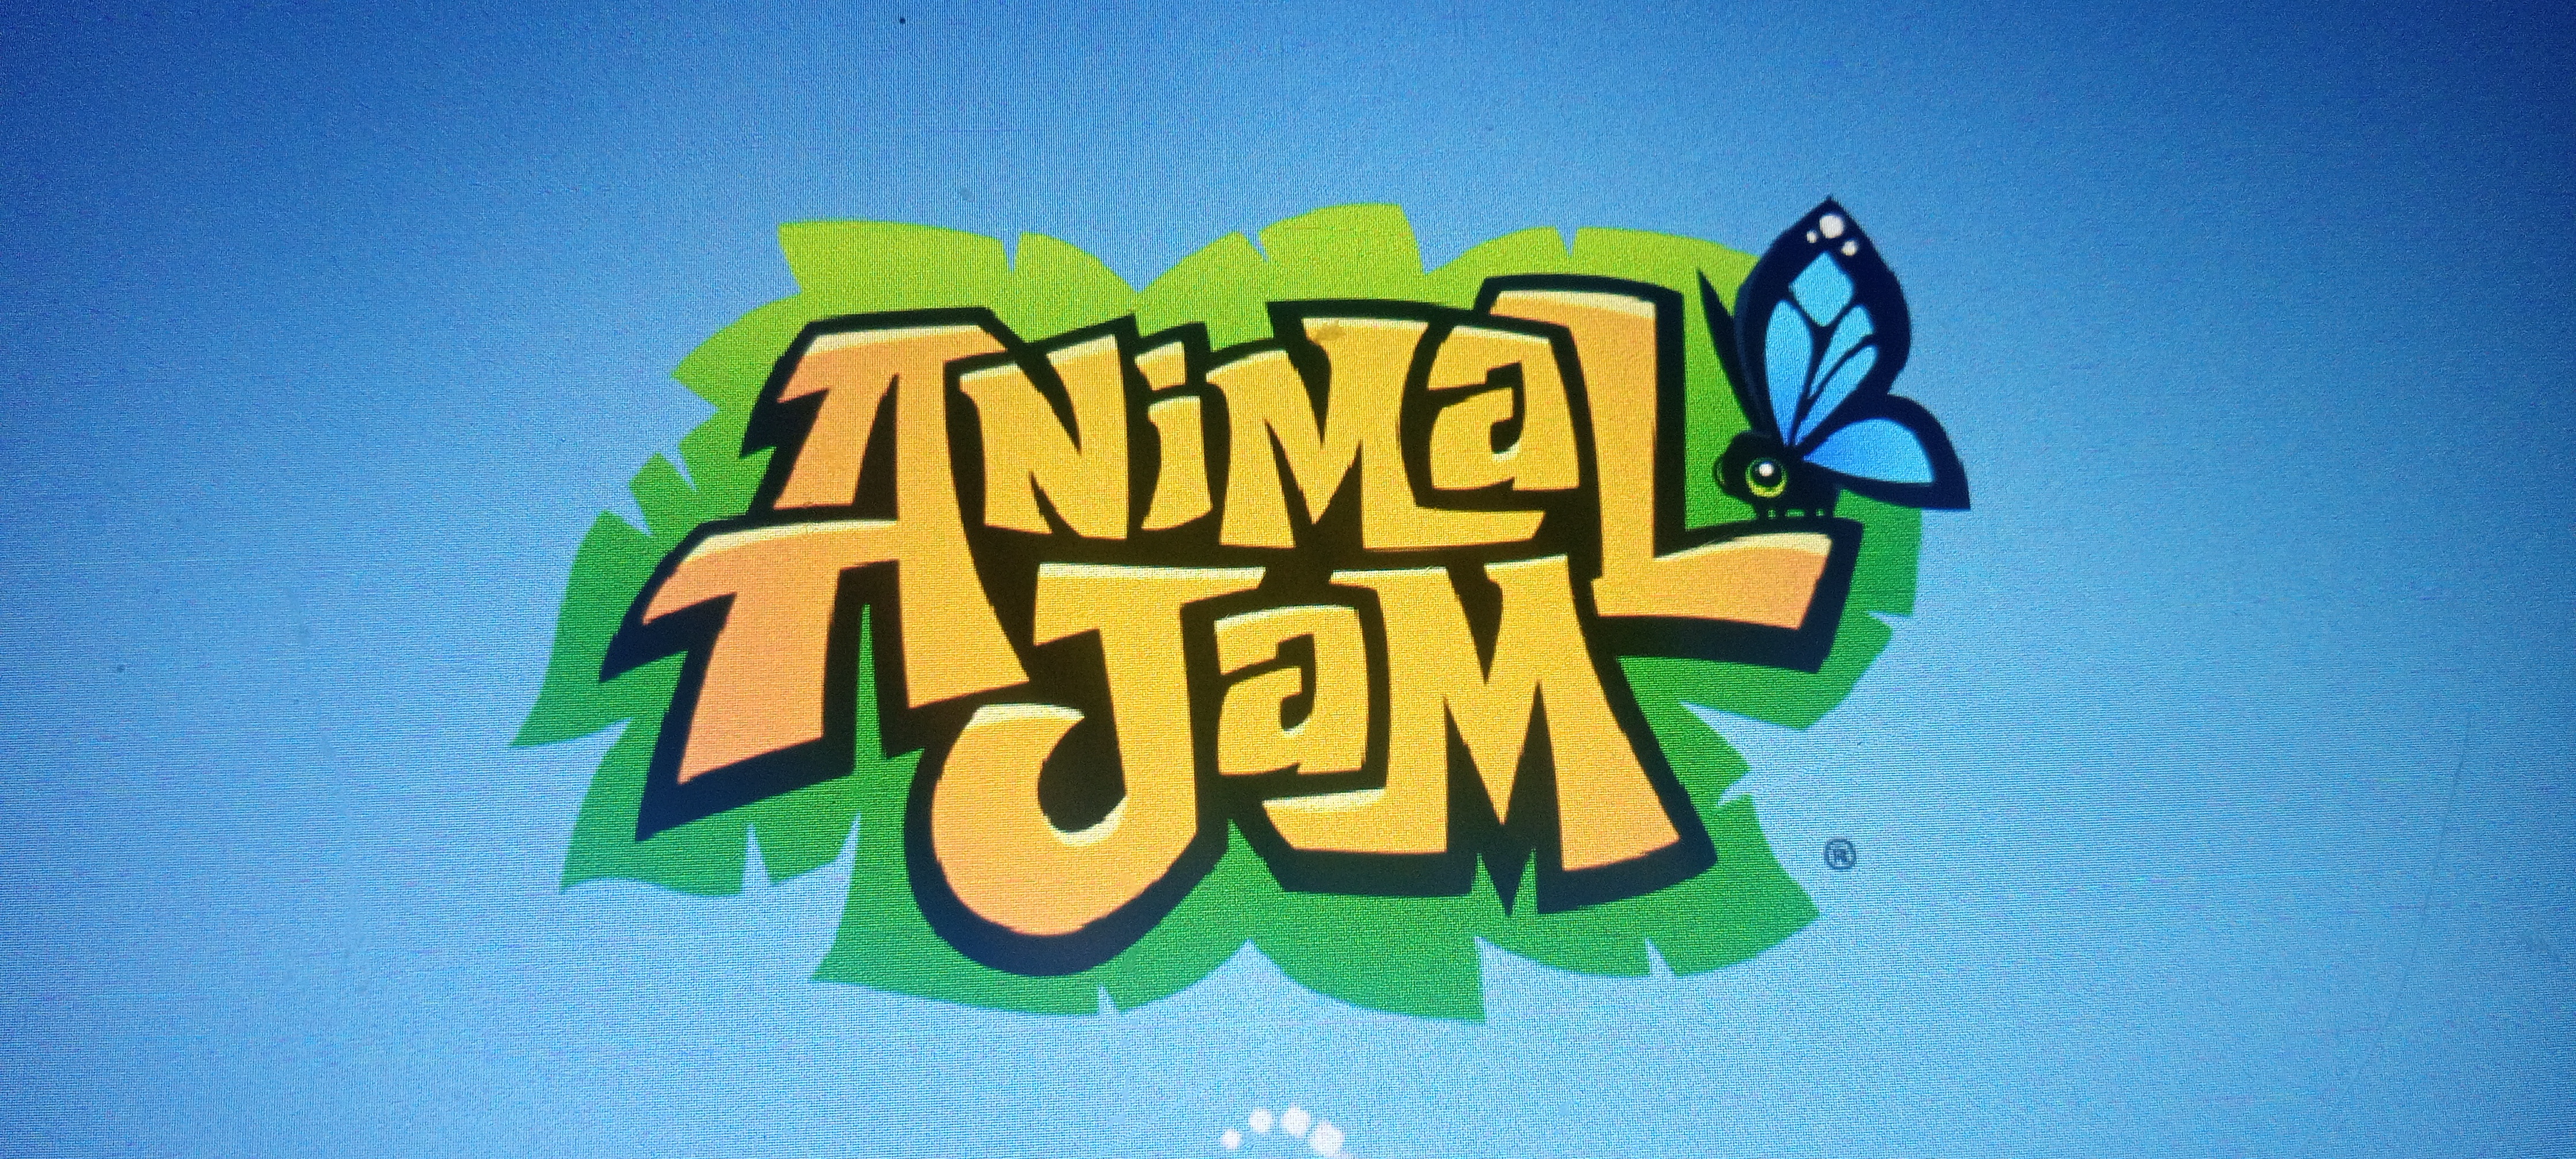 Логотип группы Animal jam кира